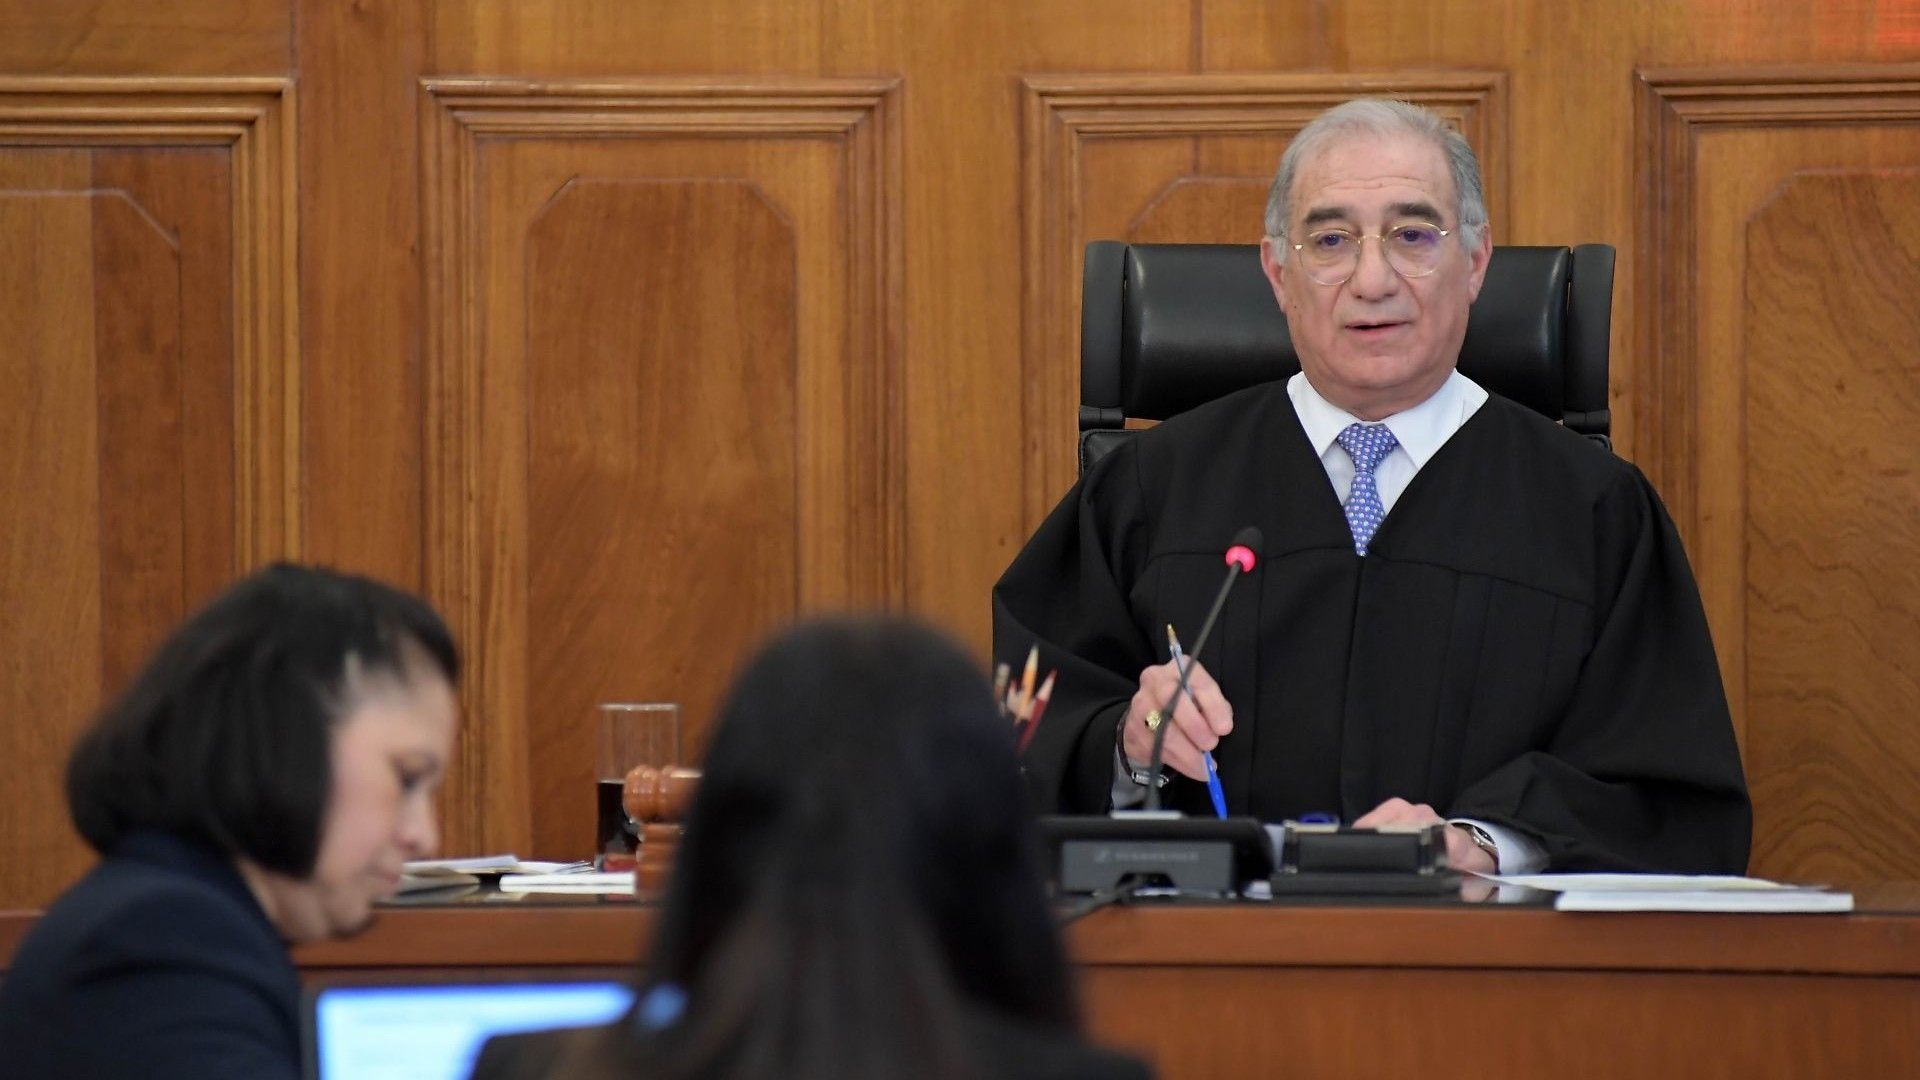 El ministro Alberto Pérez Dayán durante una sesión de la Corte